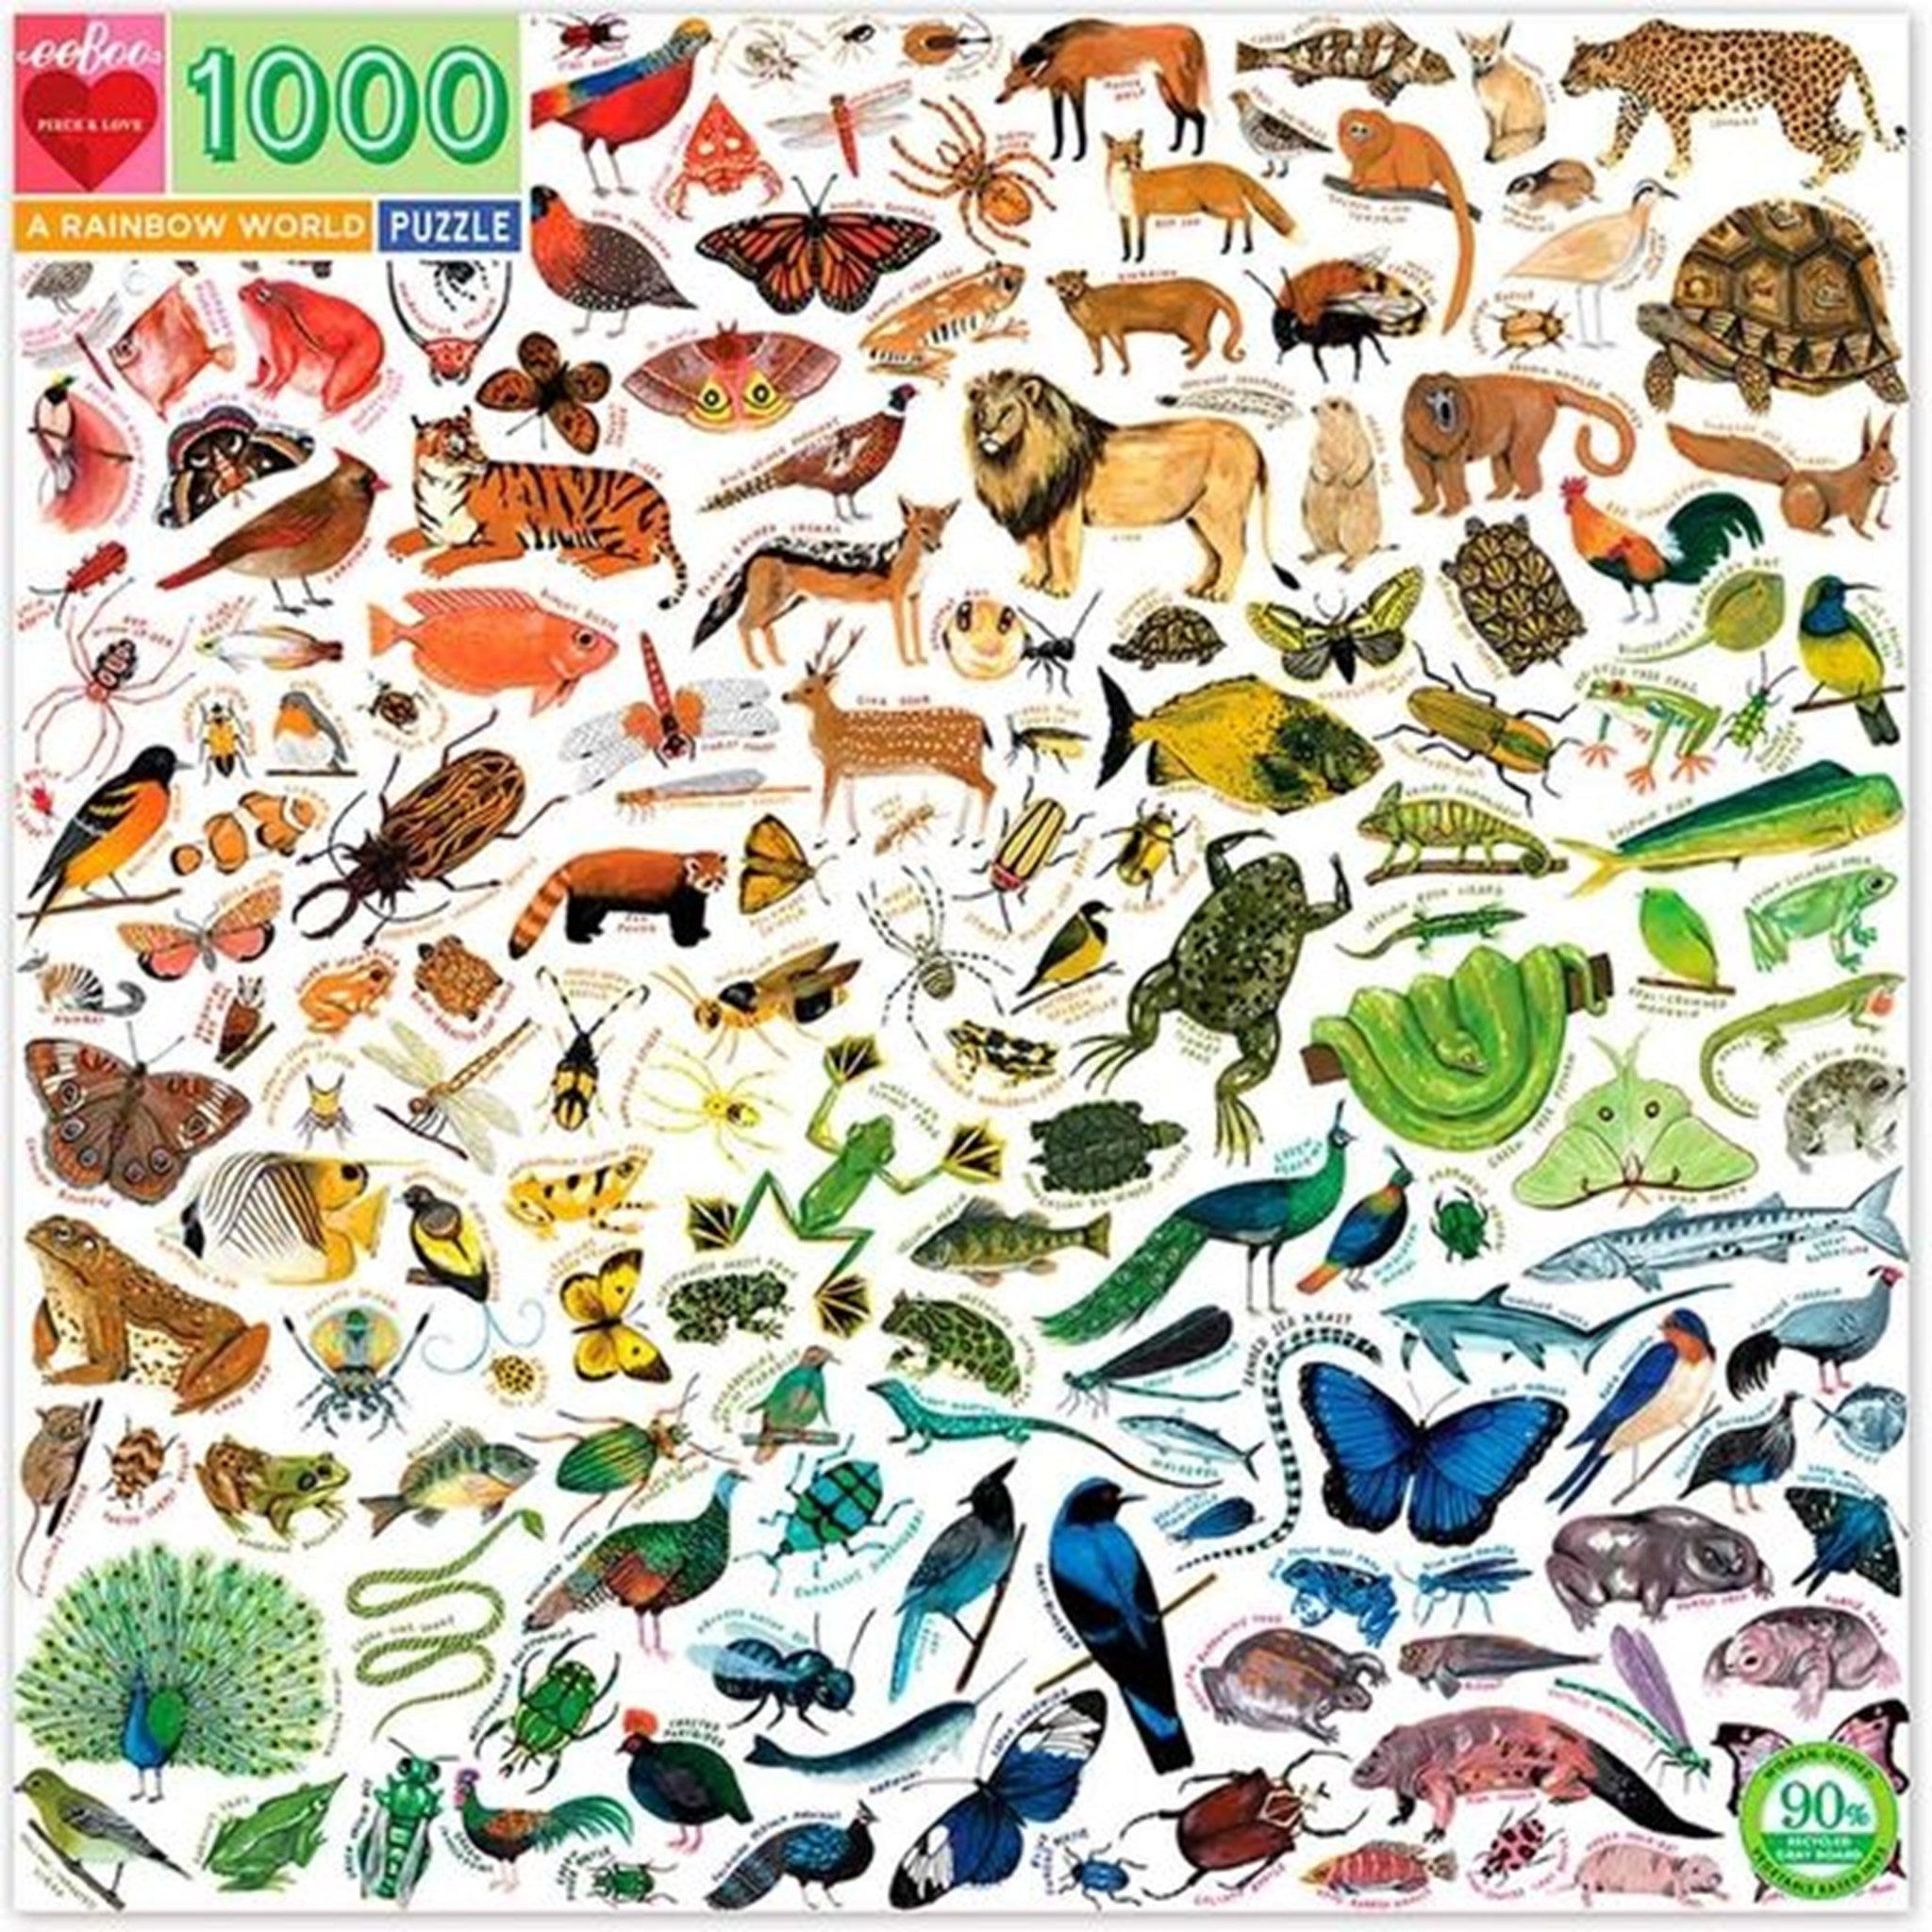 Eeboo Puzzle 1000 Pieces - A Rainbow World